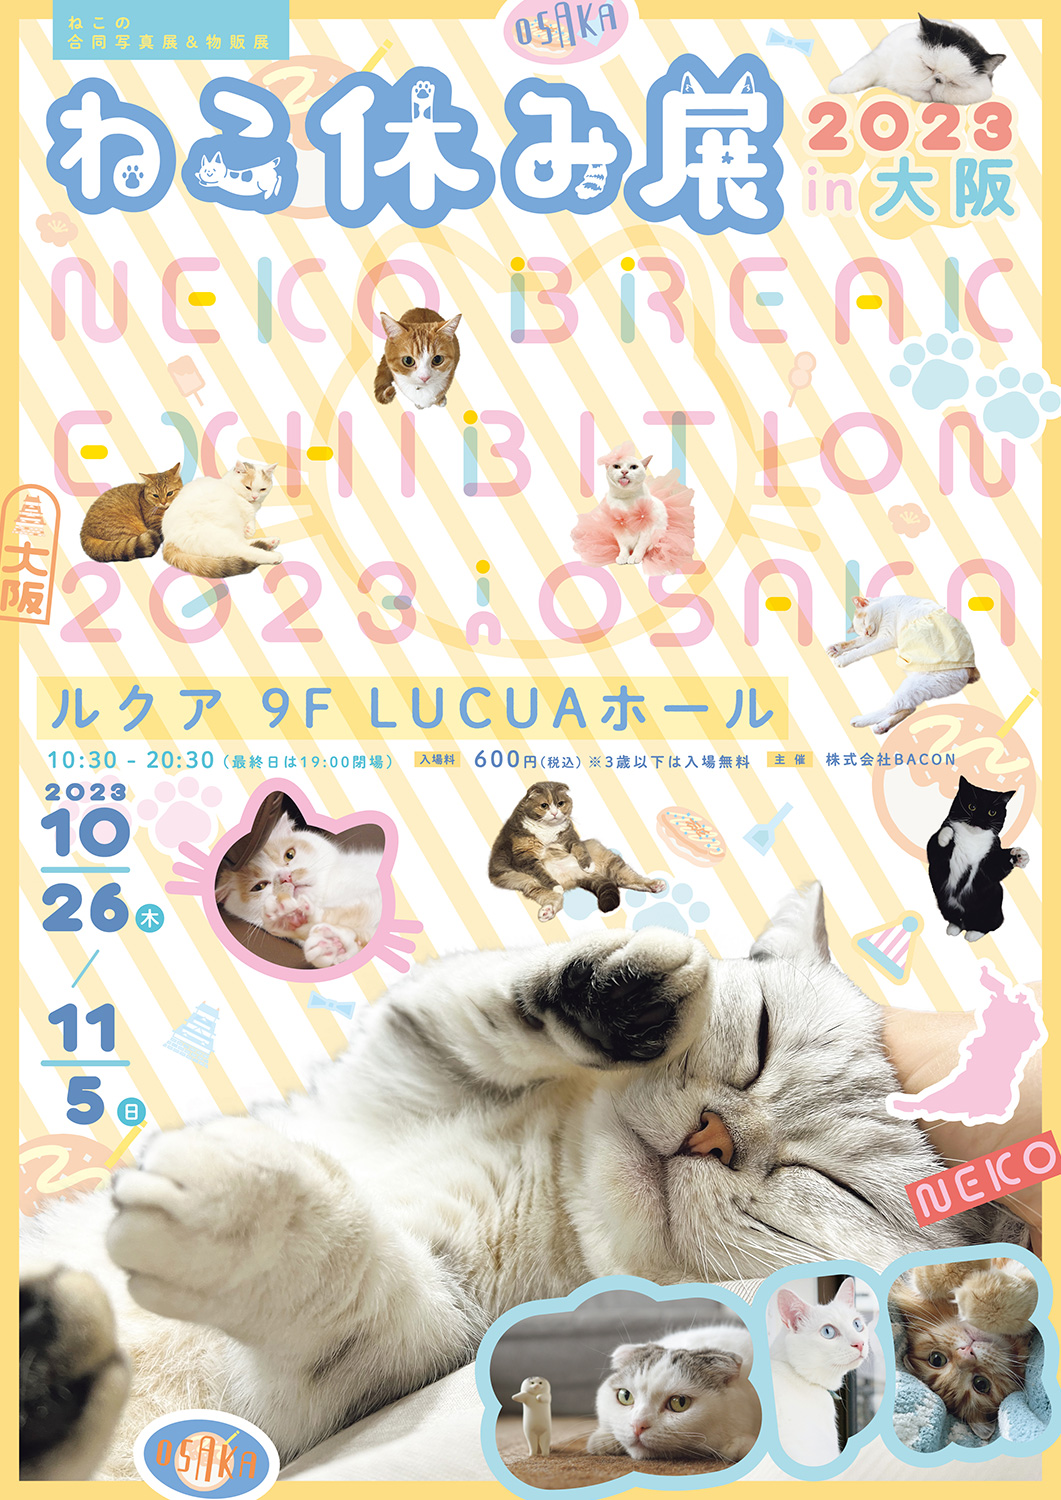 猫の合同写真展＆物販展「ねこ休み展 2023 in 大阪」